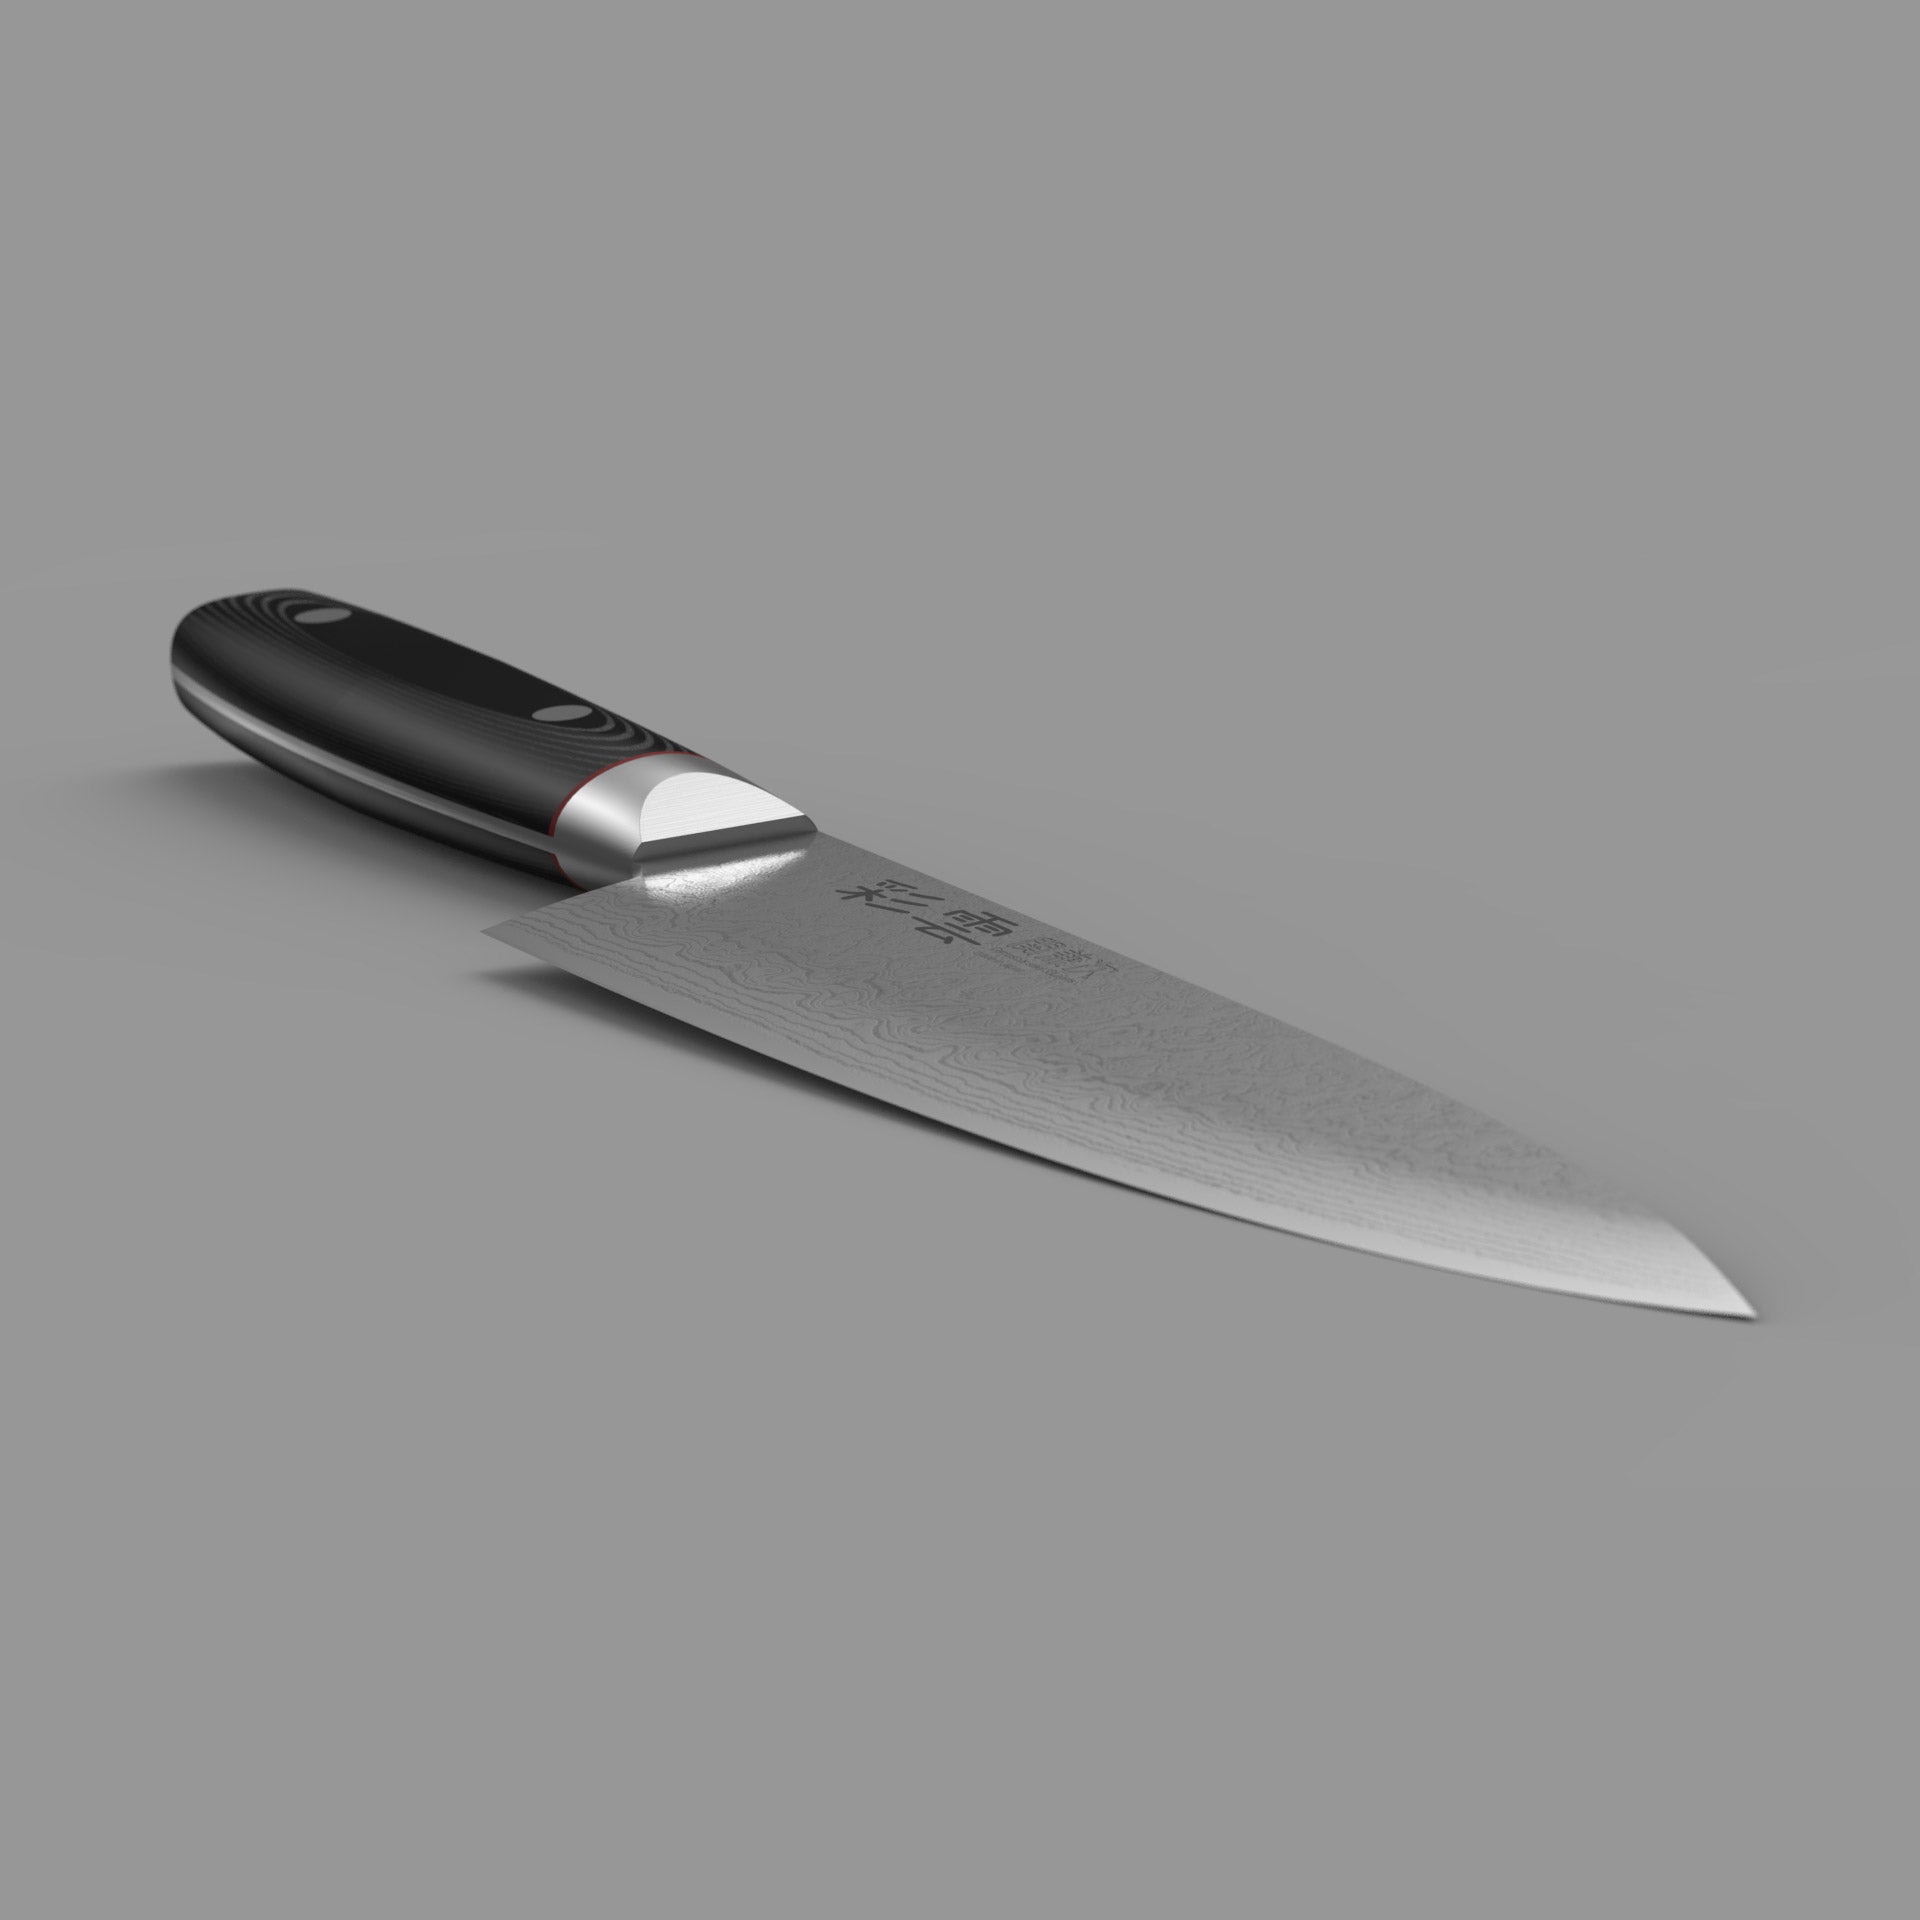 http://nakano-knives.com/cdn/shop/products/NAKANO_Saiun_5.jpg?v=1615269122